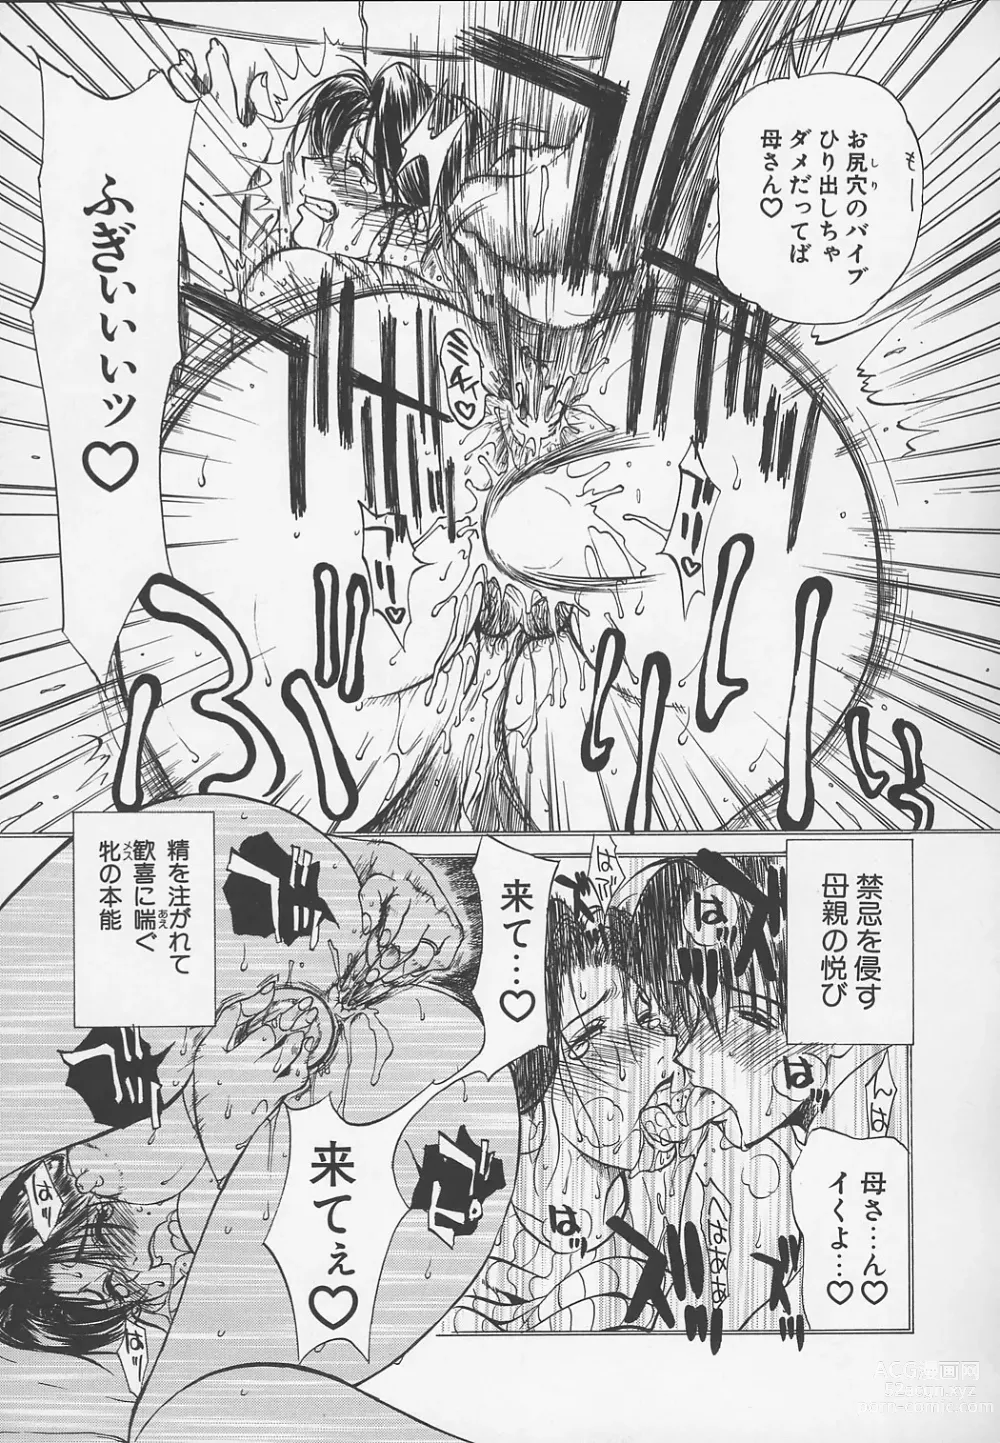 Page 226 of manga Enbo -Kanzenban-